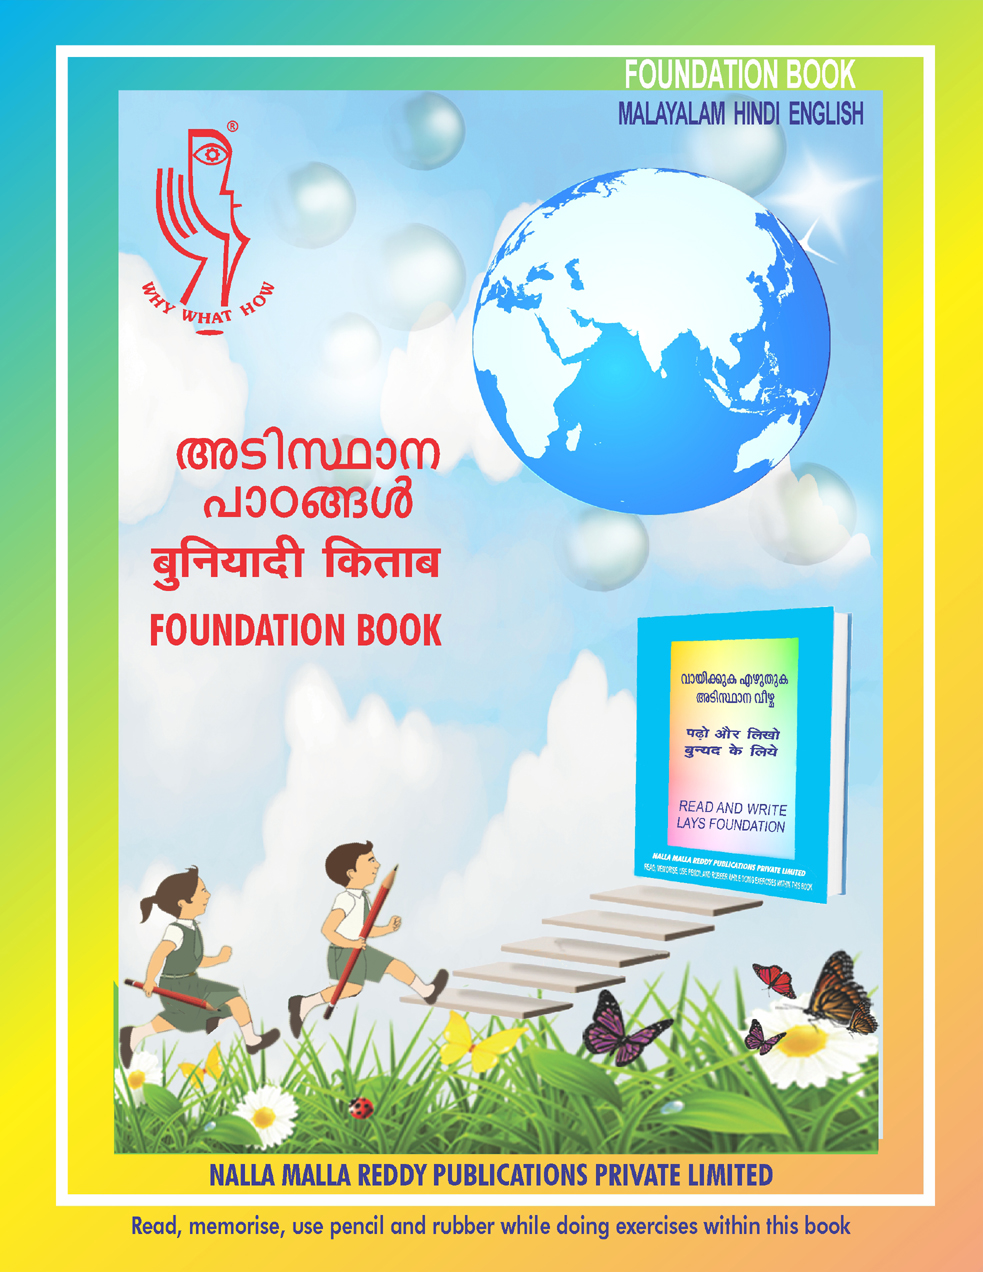 Malayalam Hindi English Foundation Book Tittle